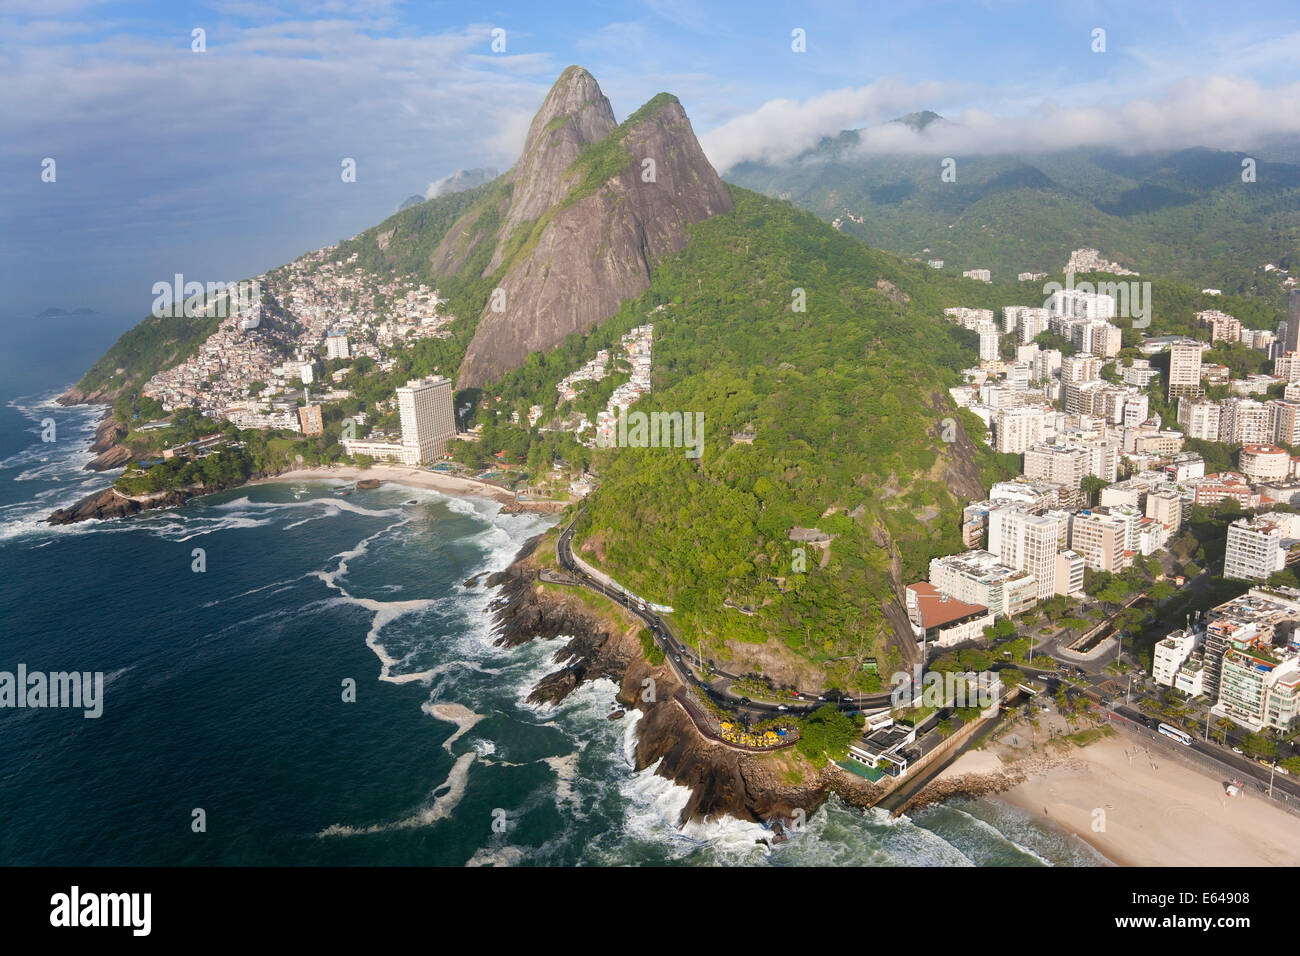 Dois Irmaos mountain, Ipanema, Rio de Janeiro, Brazil Stock Photo